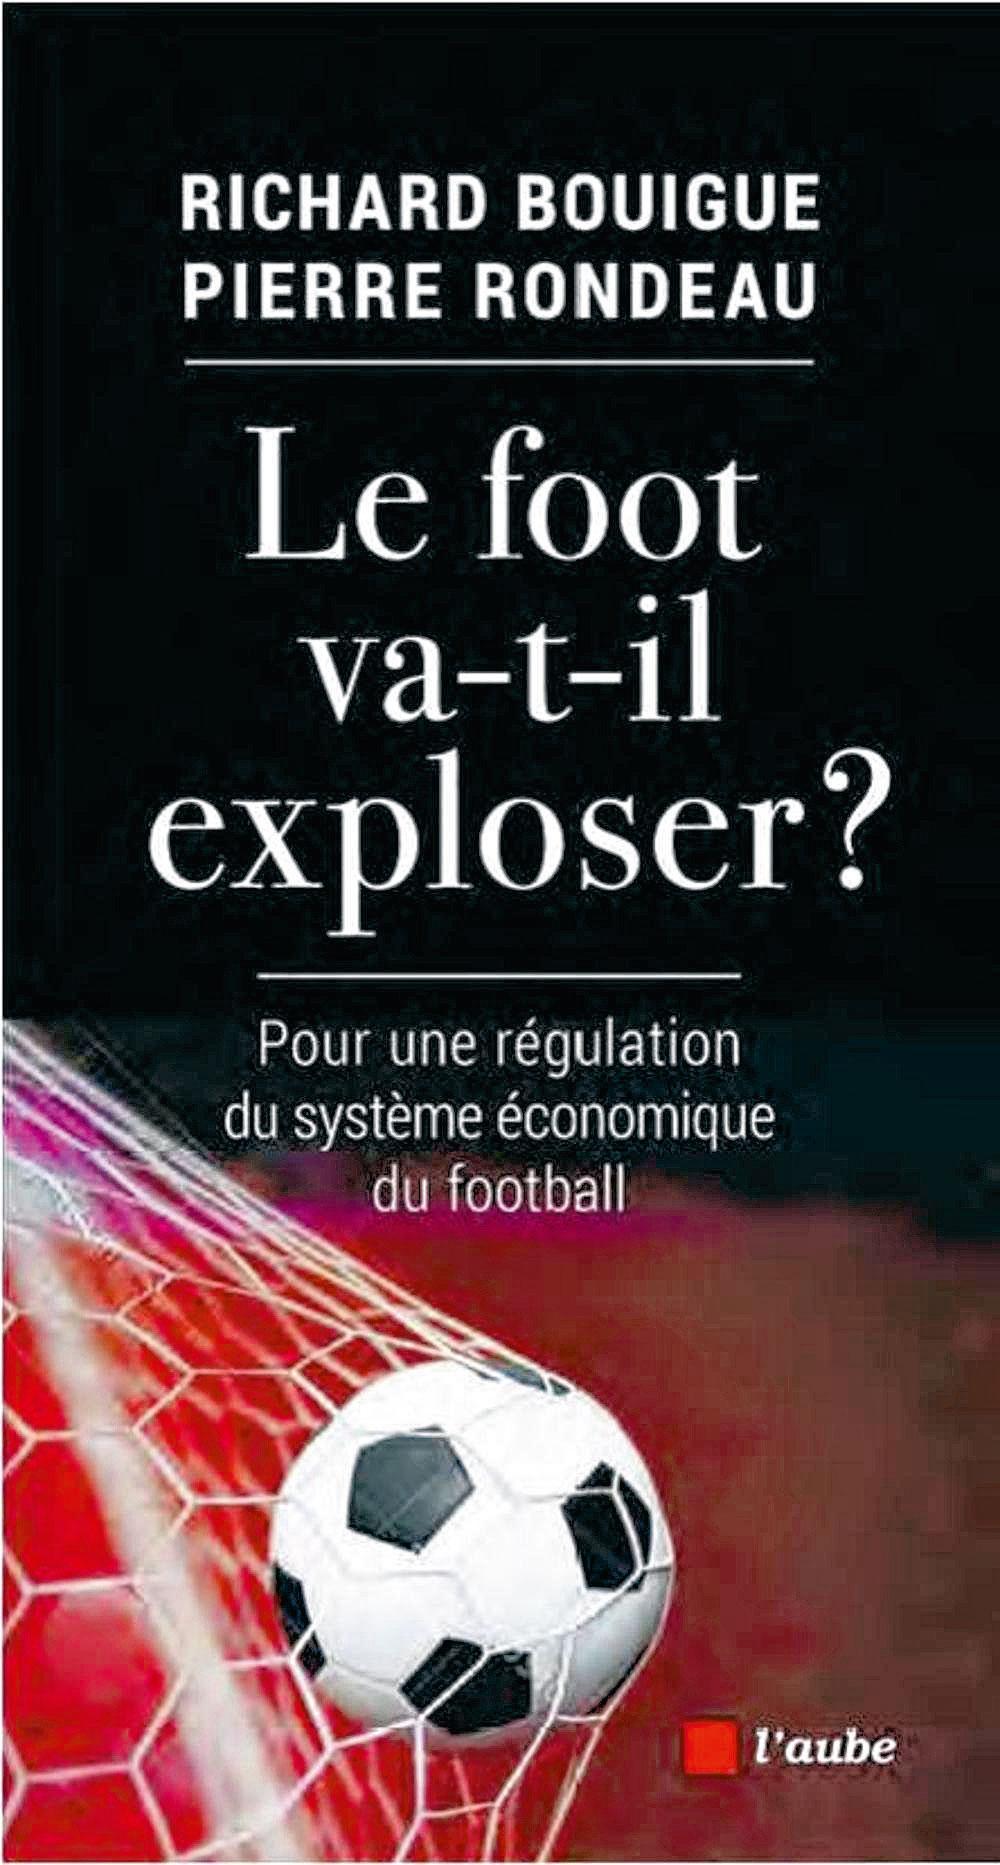 Le foot va-t-il exploser ?, par Richard Bouigue et Pierre Rondeau, L'Aube.